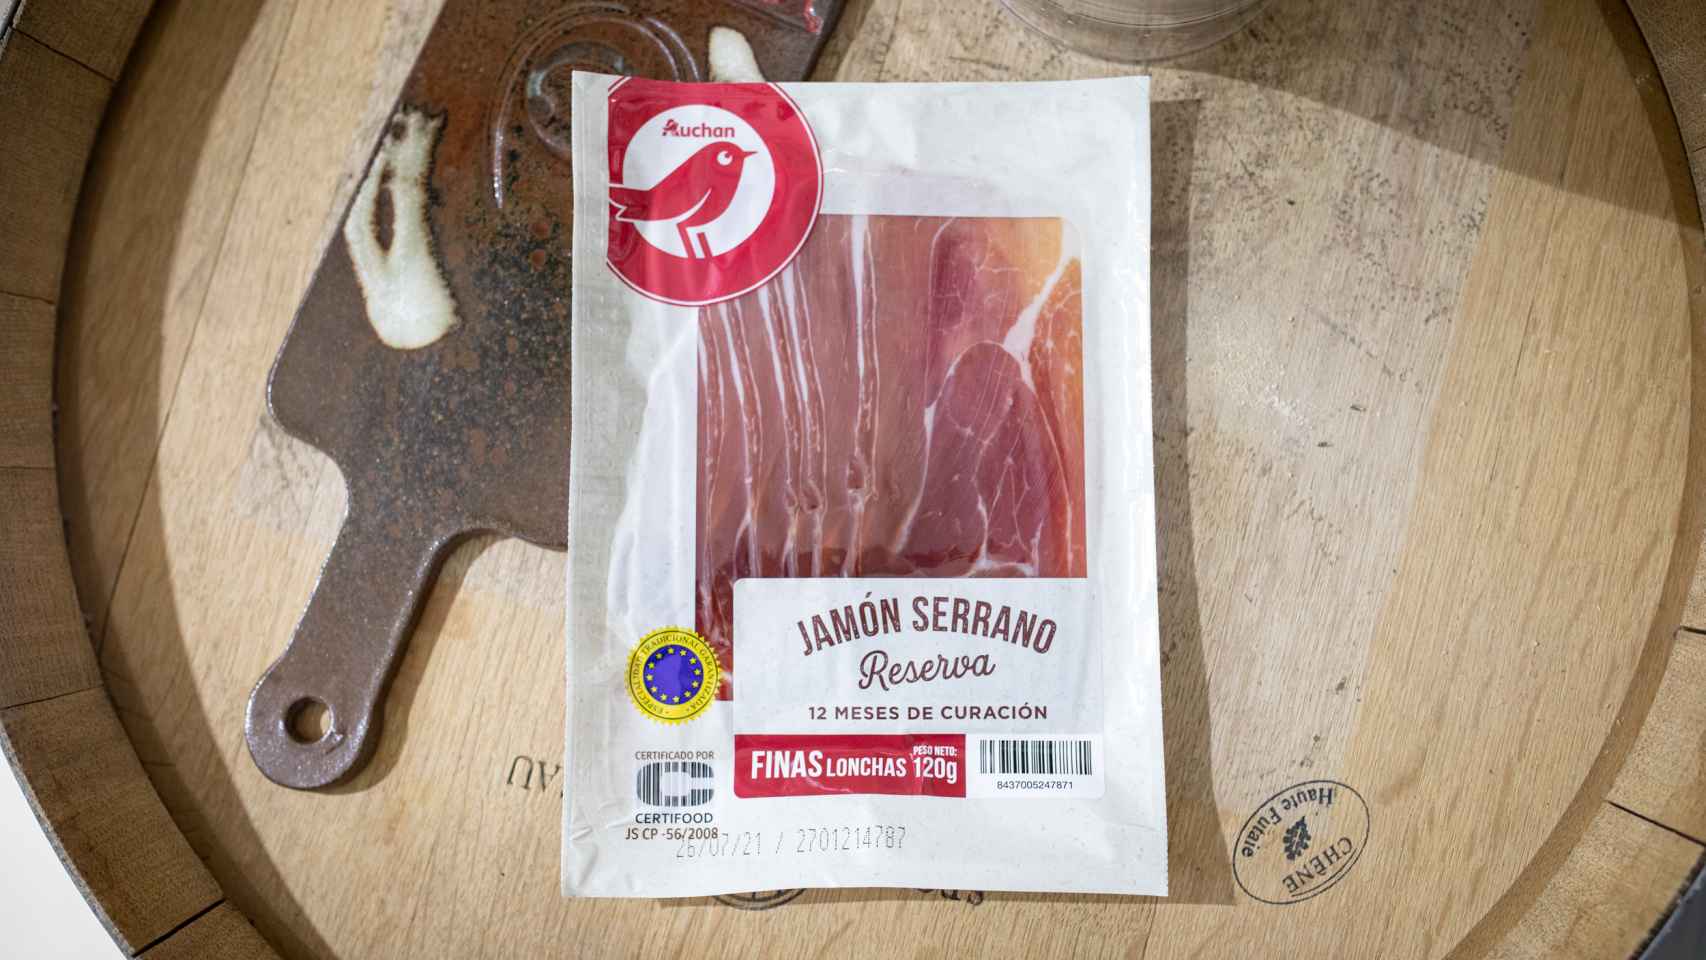 El paquete de jamón serrano de Auchan, la marca blanca de Alcampo.